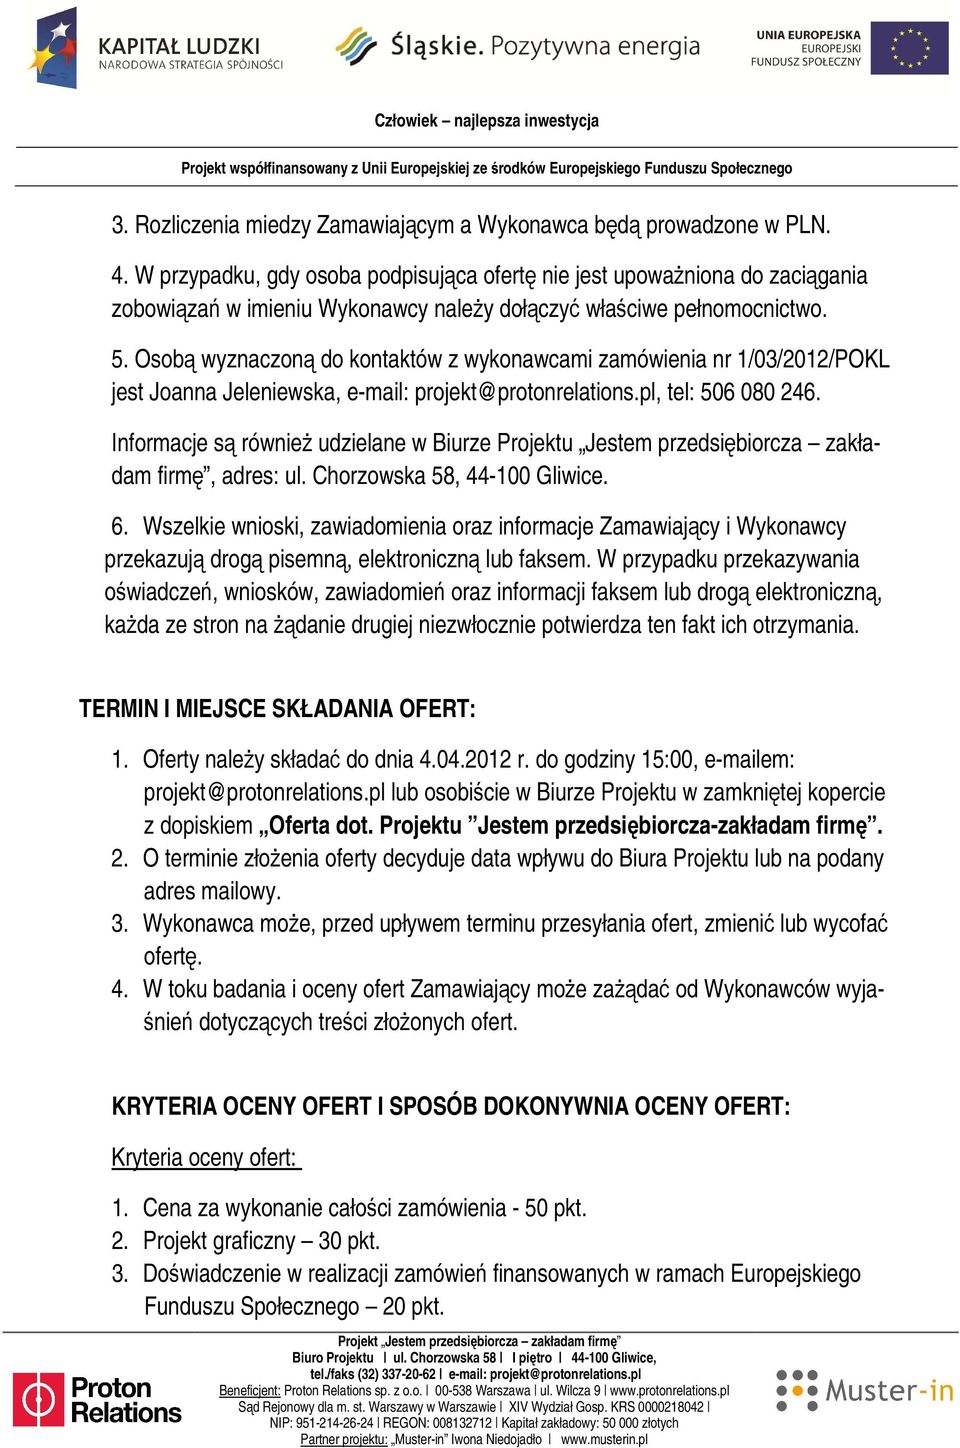 Osobą wyznaczoną do kontaktów z wykonawcami zamówienia nr 1/03/2012/POKL jest Joanna Jeleniewska, e-mail: projekt@protonrelations.pl, tel: 506 080 246.